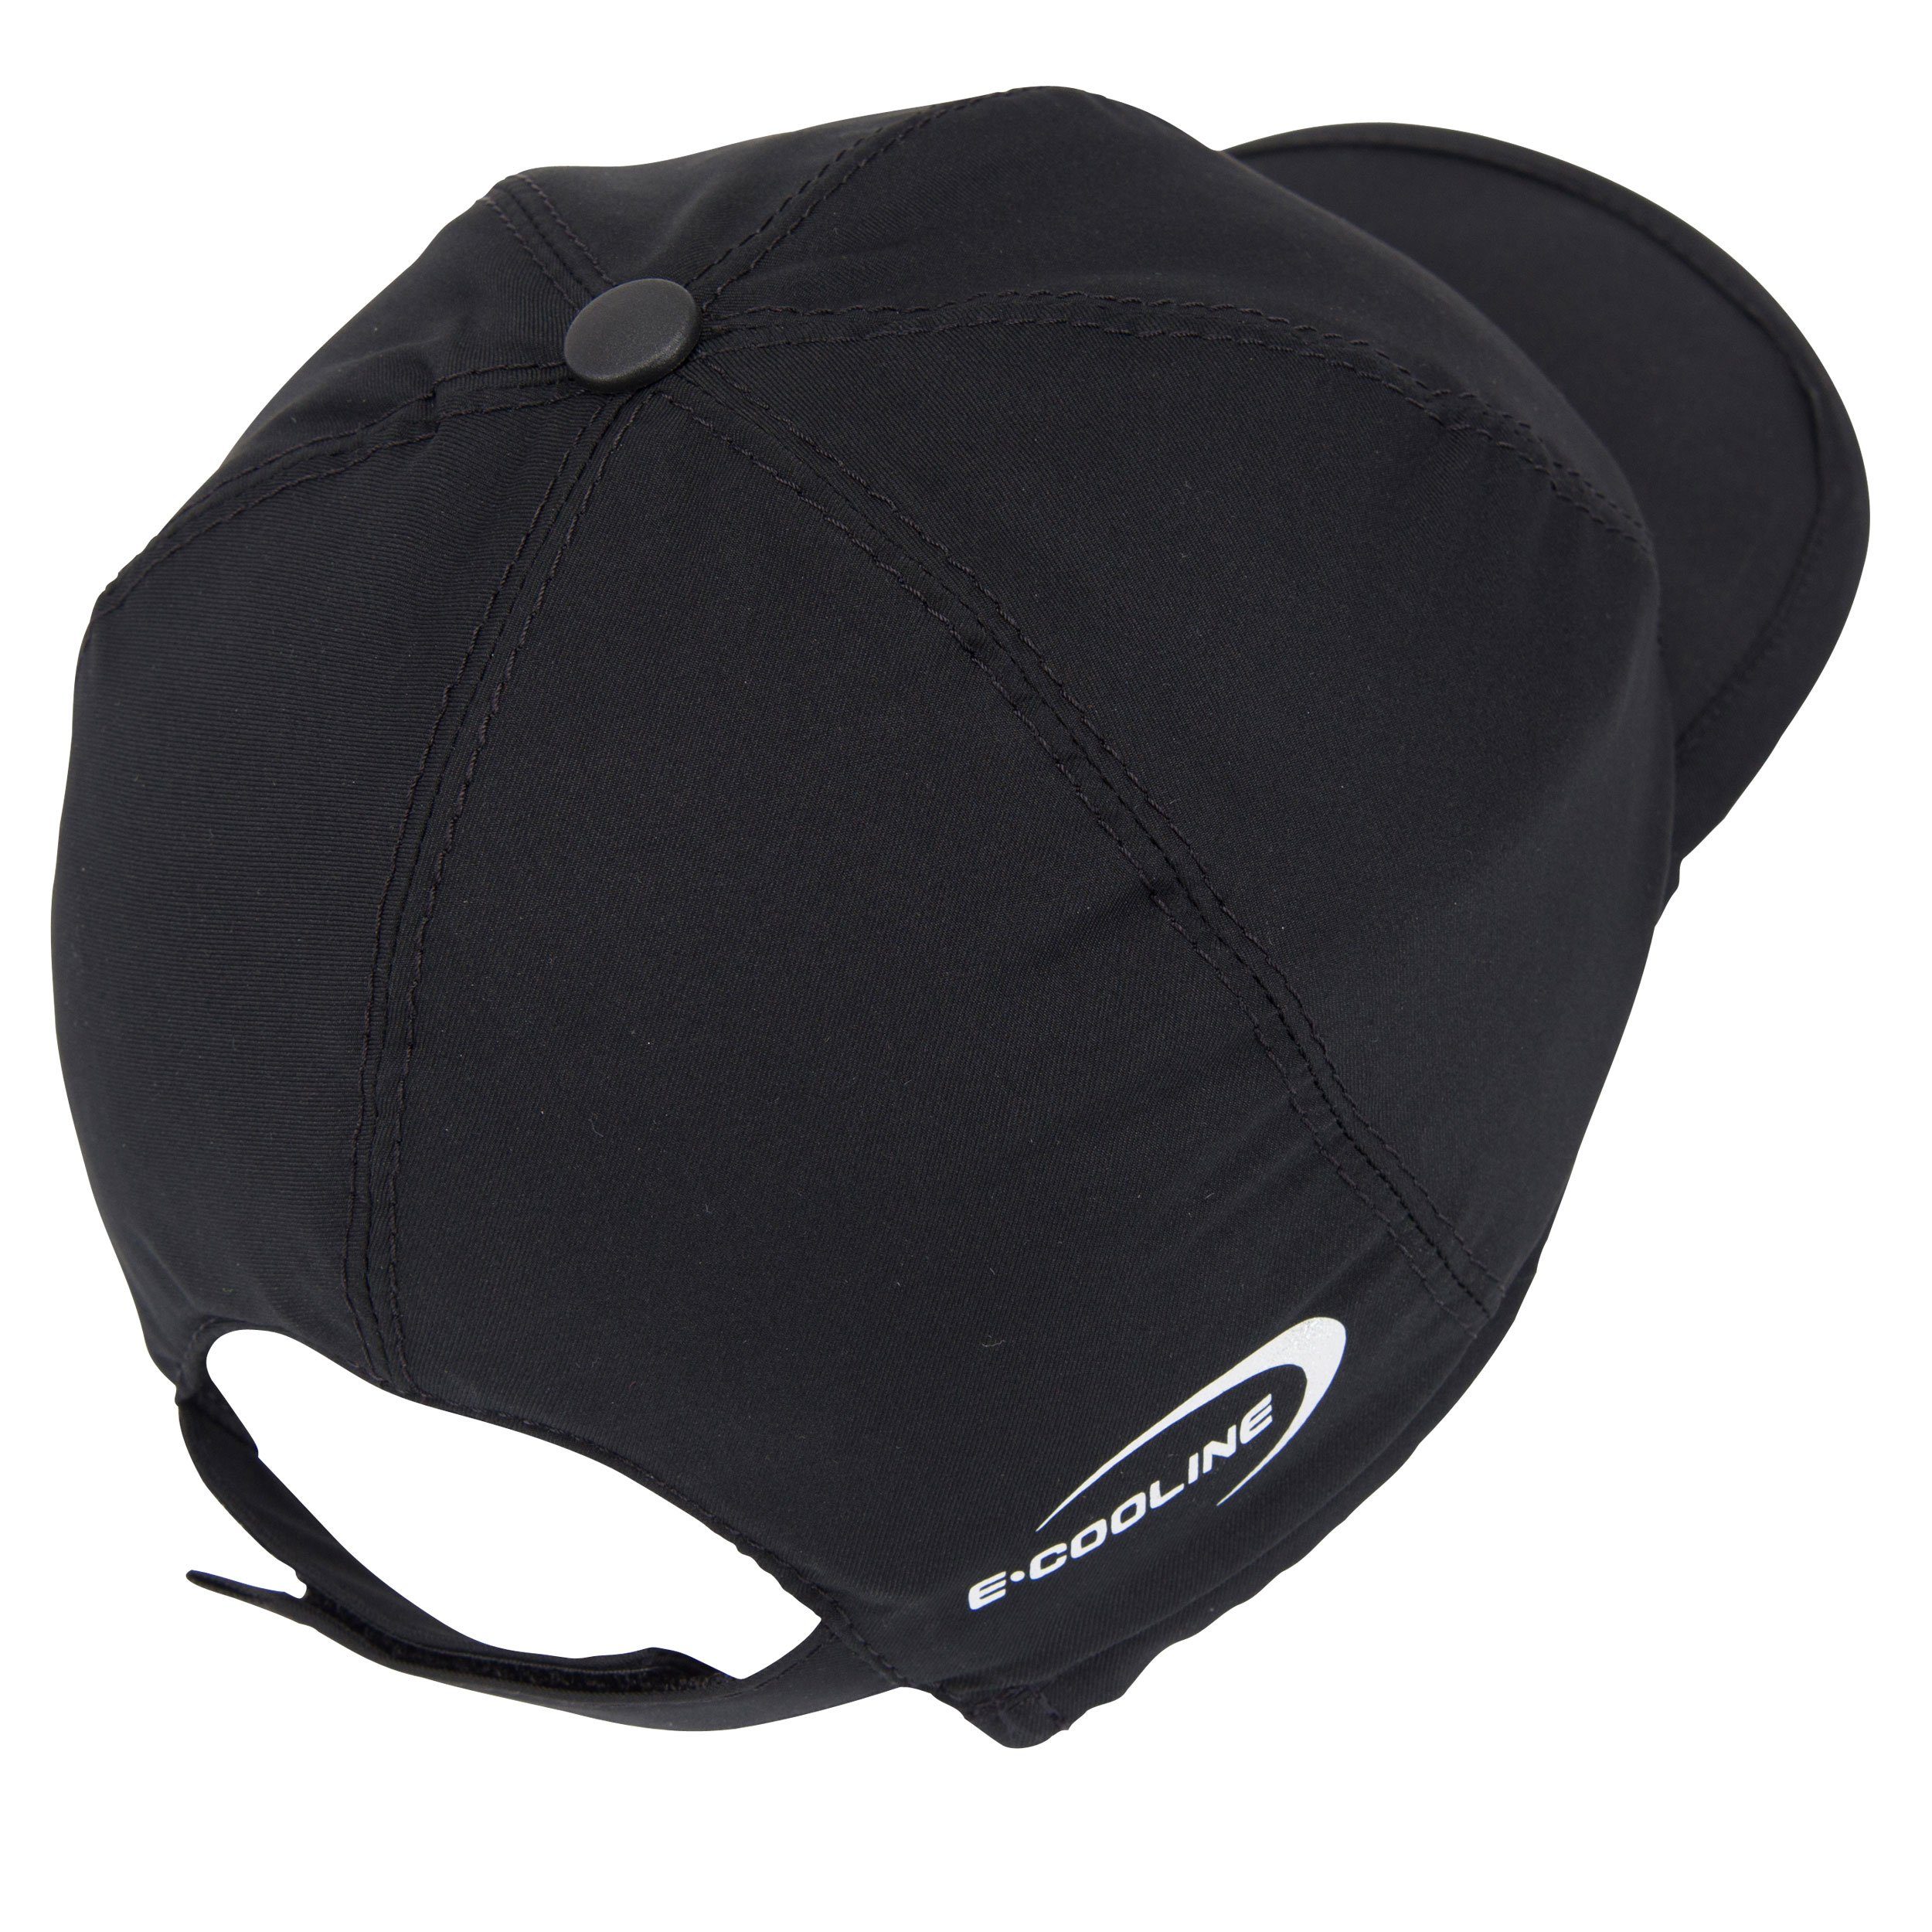 Kühlung - Klimaanlage Mütze - mit Wasser durch Anziehen Schwarz zum kühlende E.COOLINE Cap Aktivierung aktiv Baseball